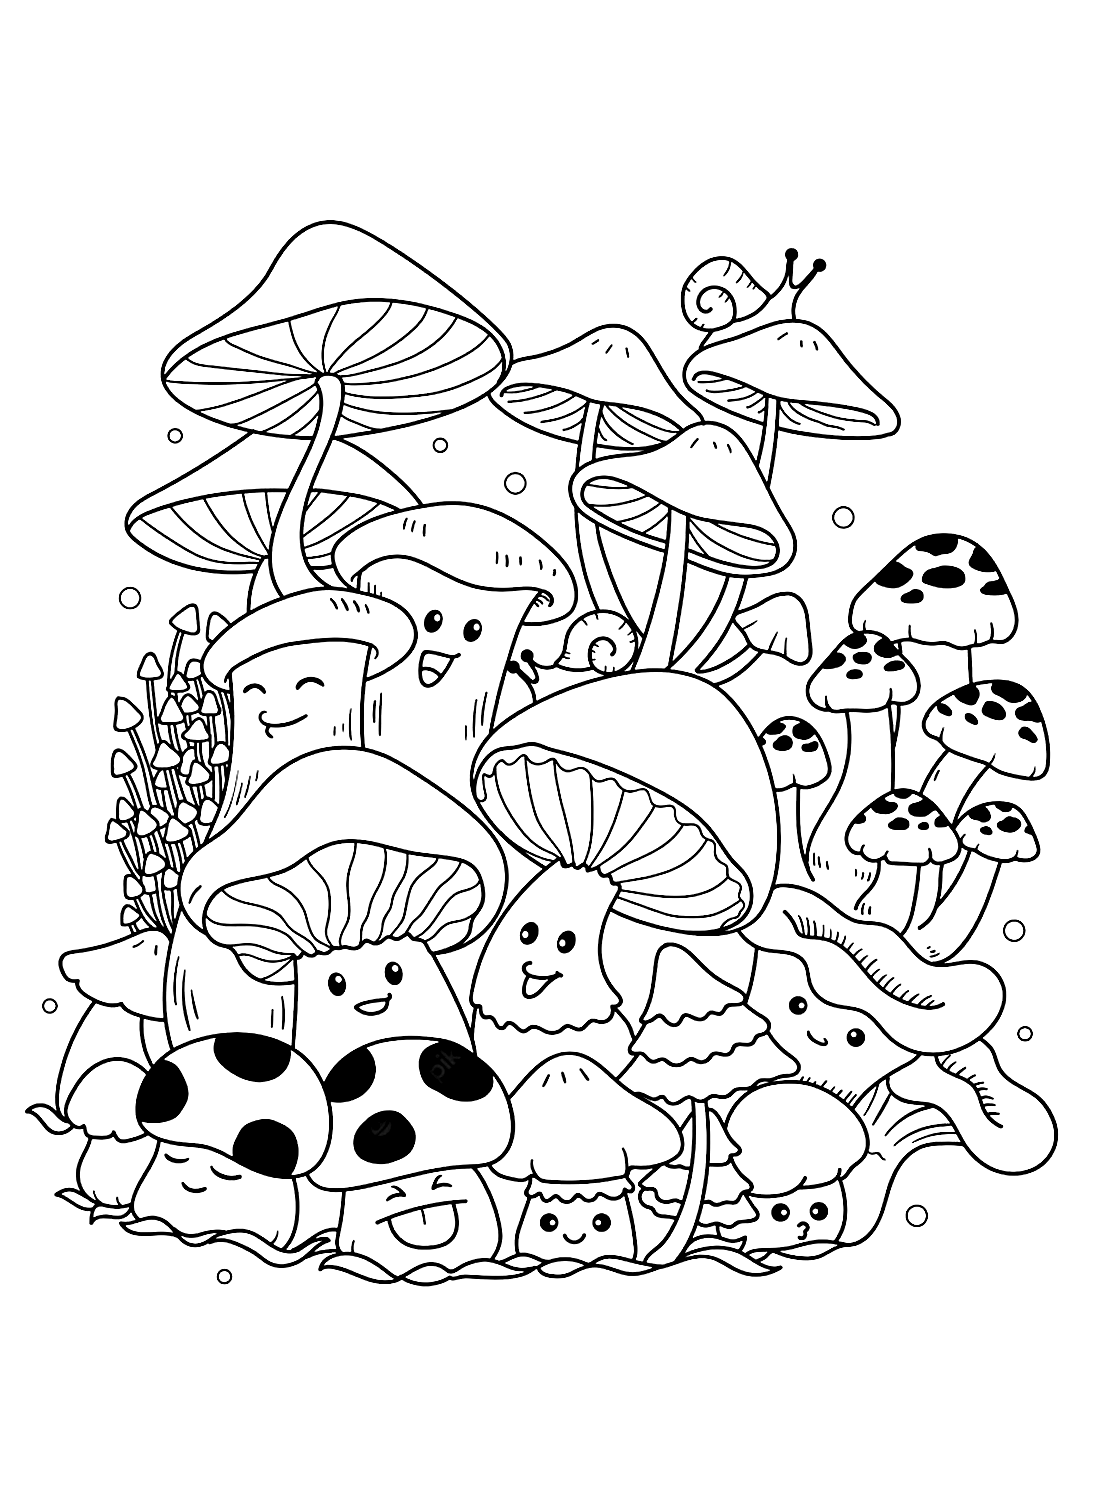 来自 Mushroom 的有趣蘑菇印刷品